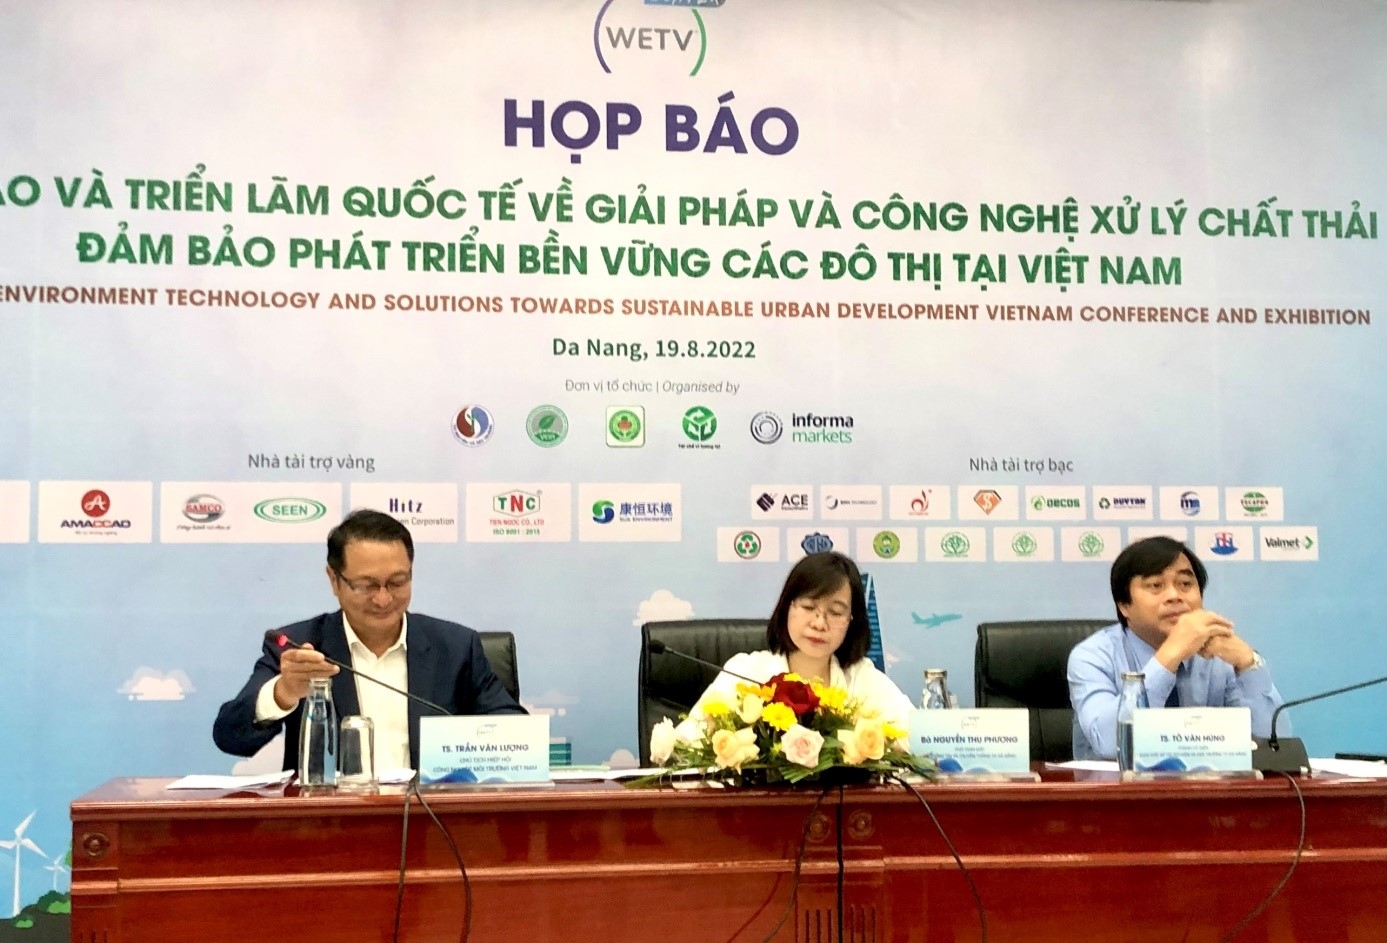 Đà Nẵng: Nhiều mô hình giải pháp, công nghệ xử lý rác hiện đại đảm bảo sự phát triển bền vững các đô thị tại Việt Nam